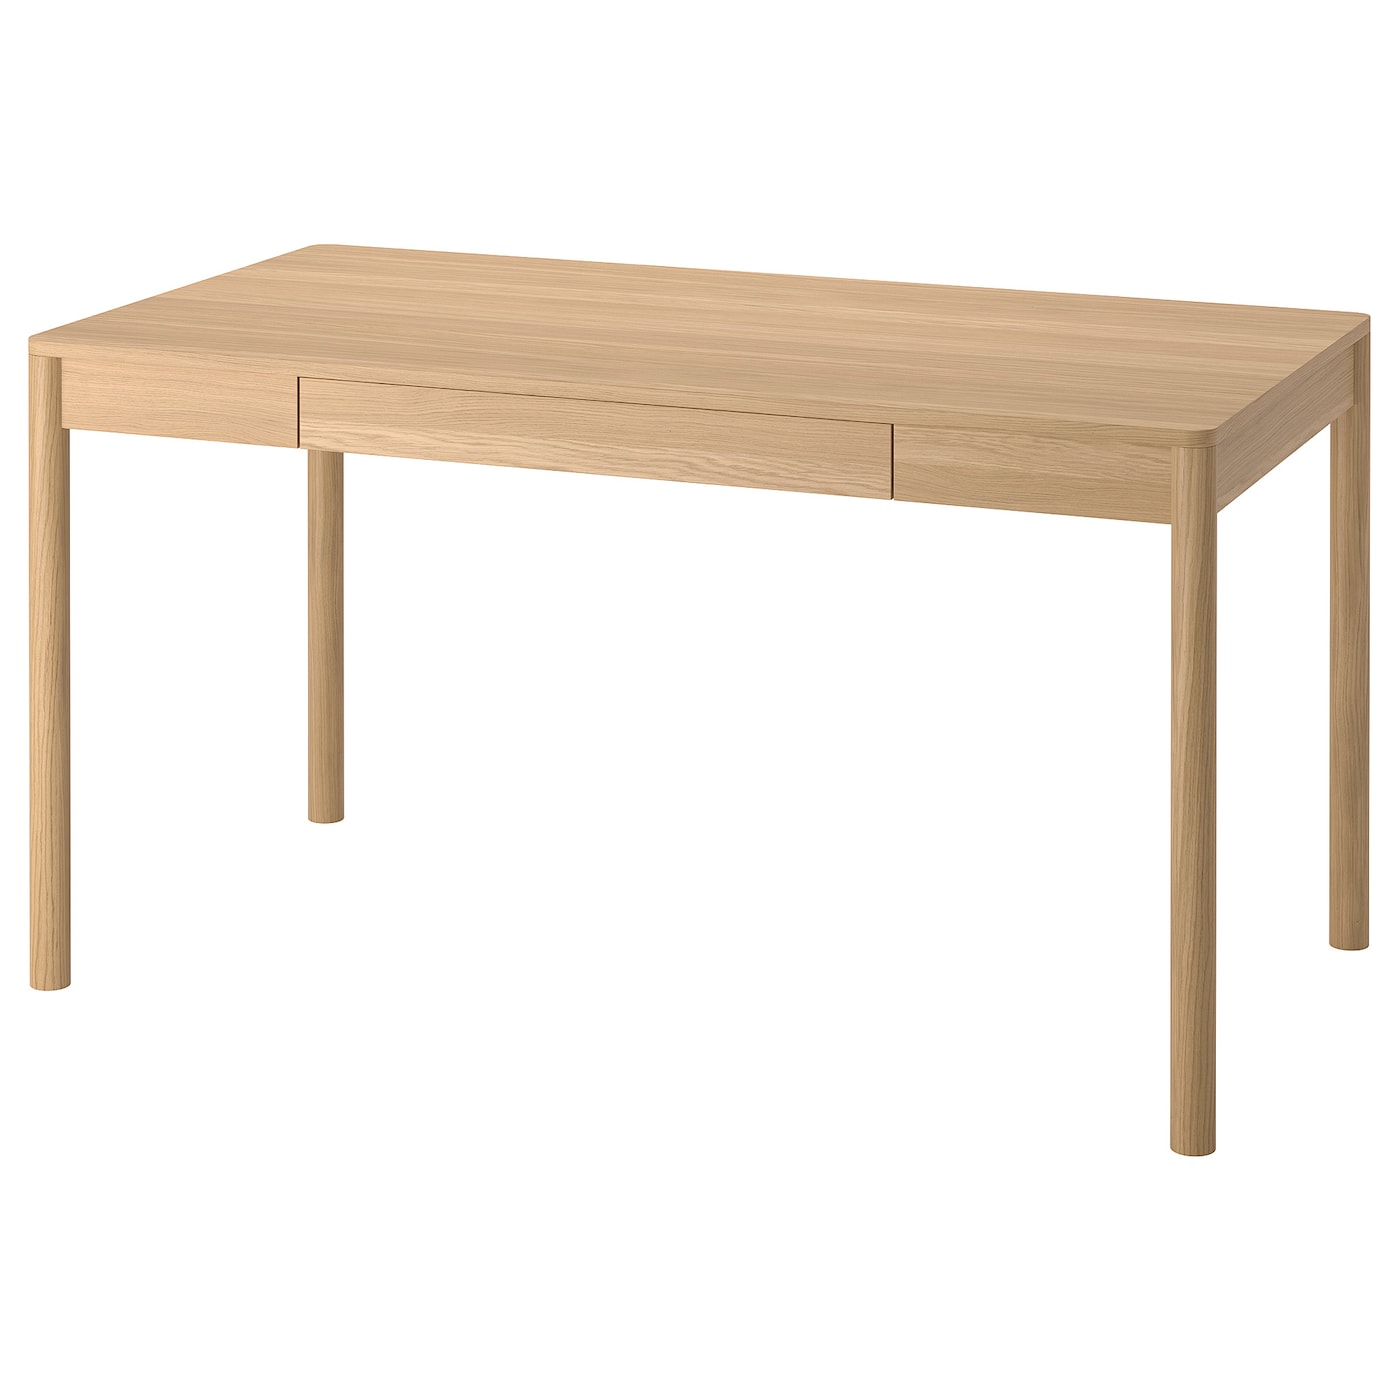 Письменный стол - IKEA TONSTAD, 140x75 см, бежевый, ТОНСТАД ИКЕА